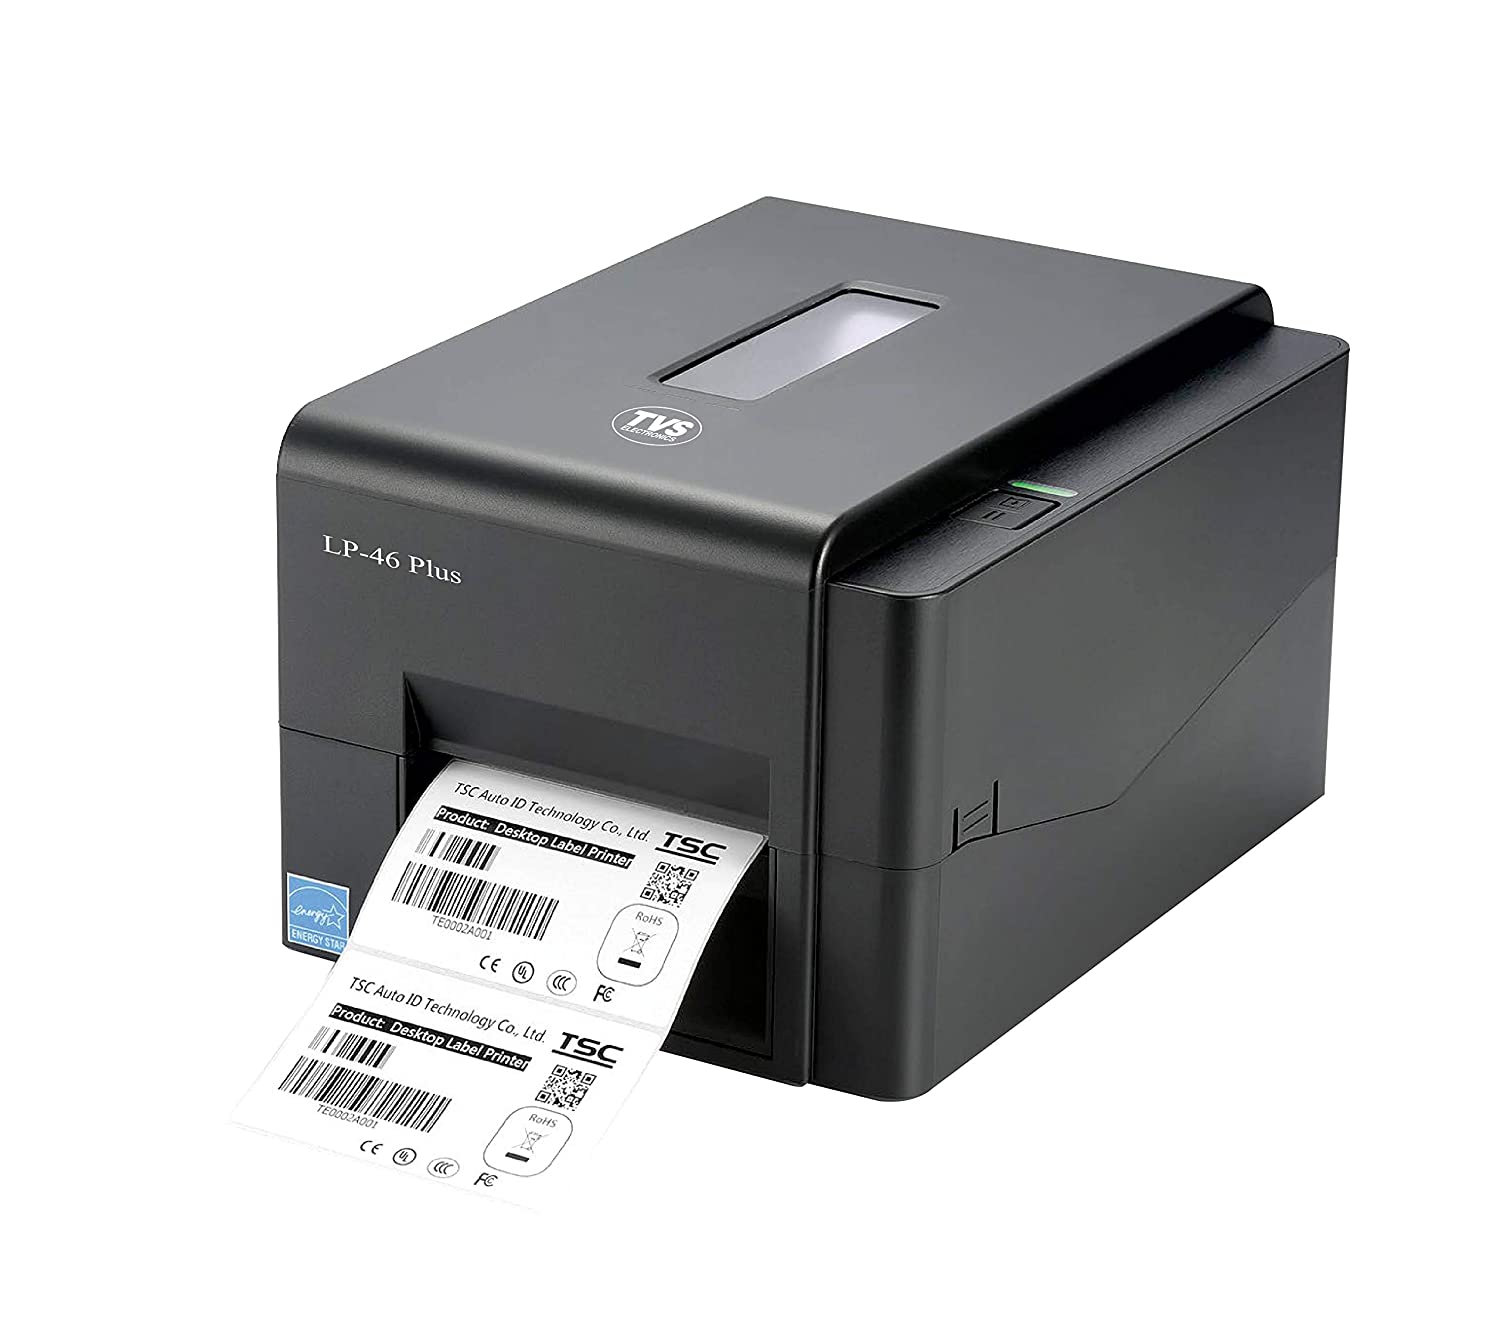 TVS Electronics LP 46 Plus Label Printer-Printers, Copiers & Fax Machines-dealsplant